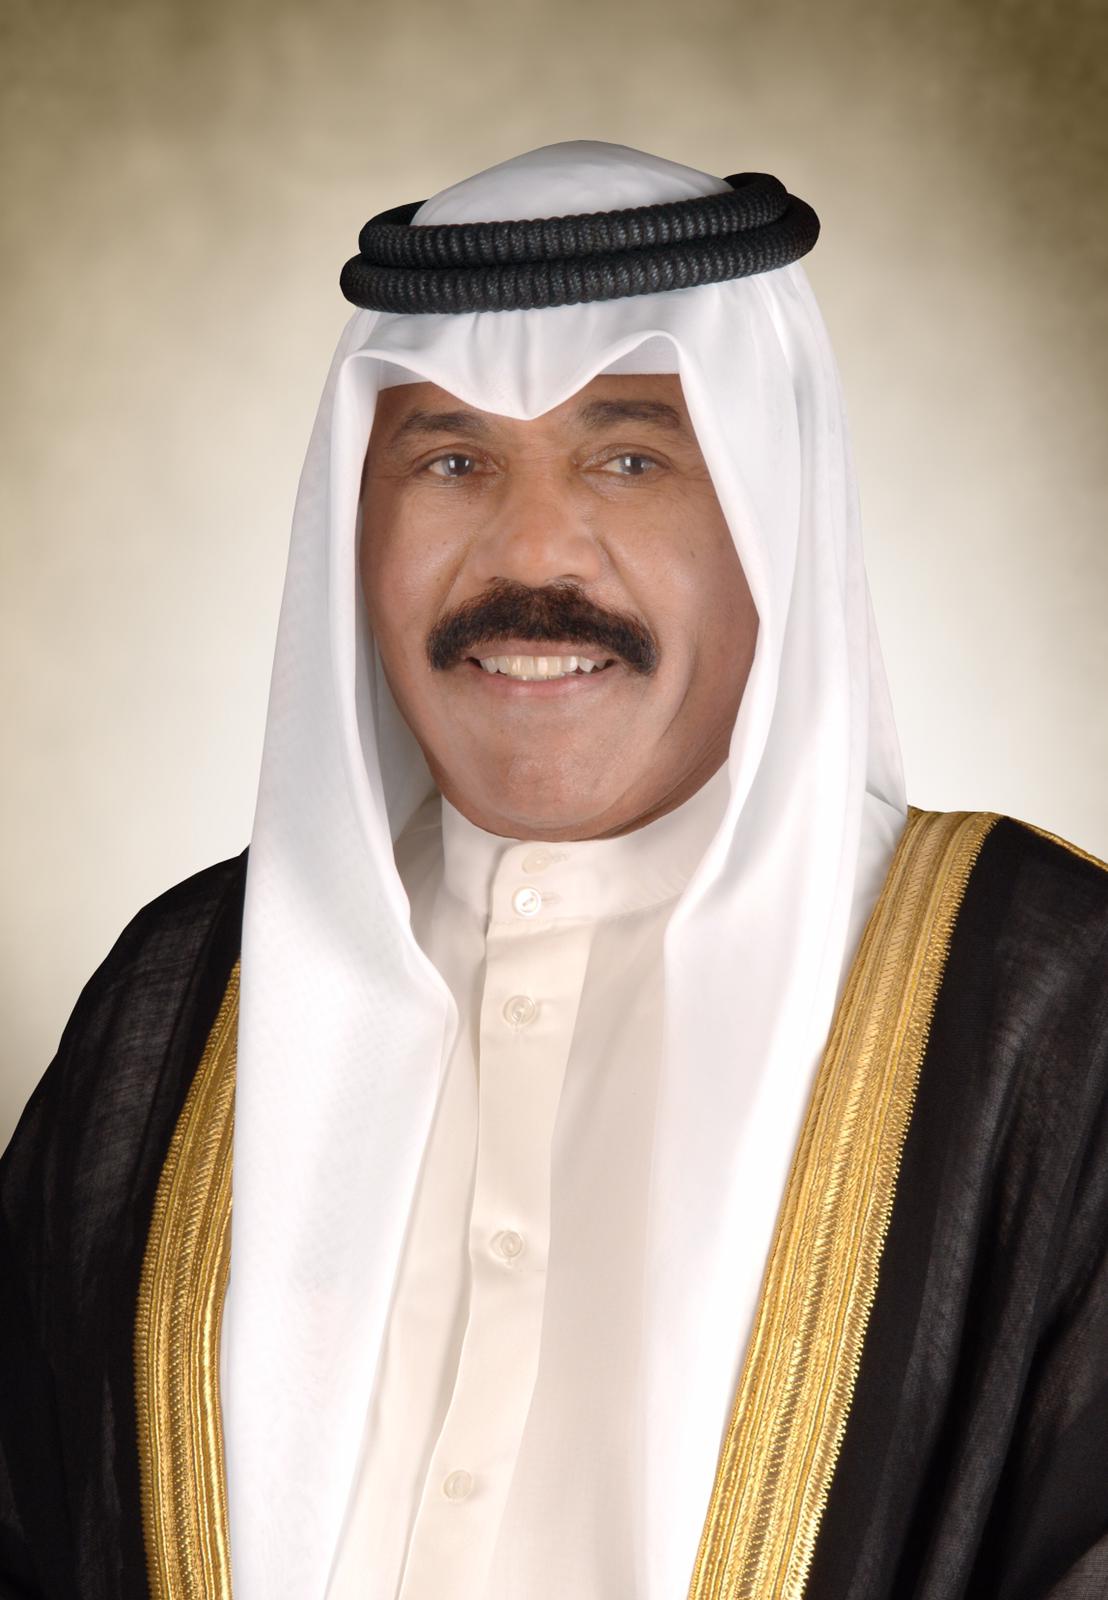  سمو أمير البلاد يهنئ خادم الحرمين باليوم الوطني للمملكة العربية السعودية 